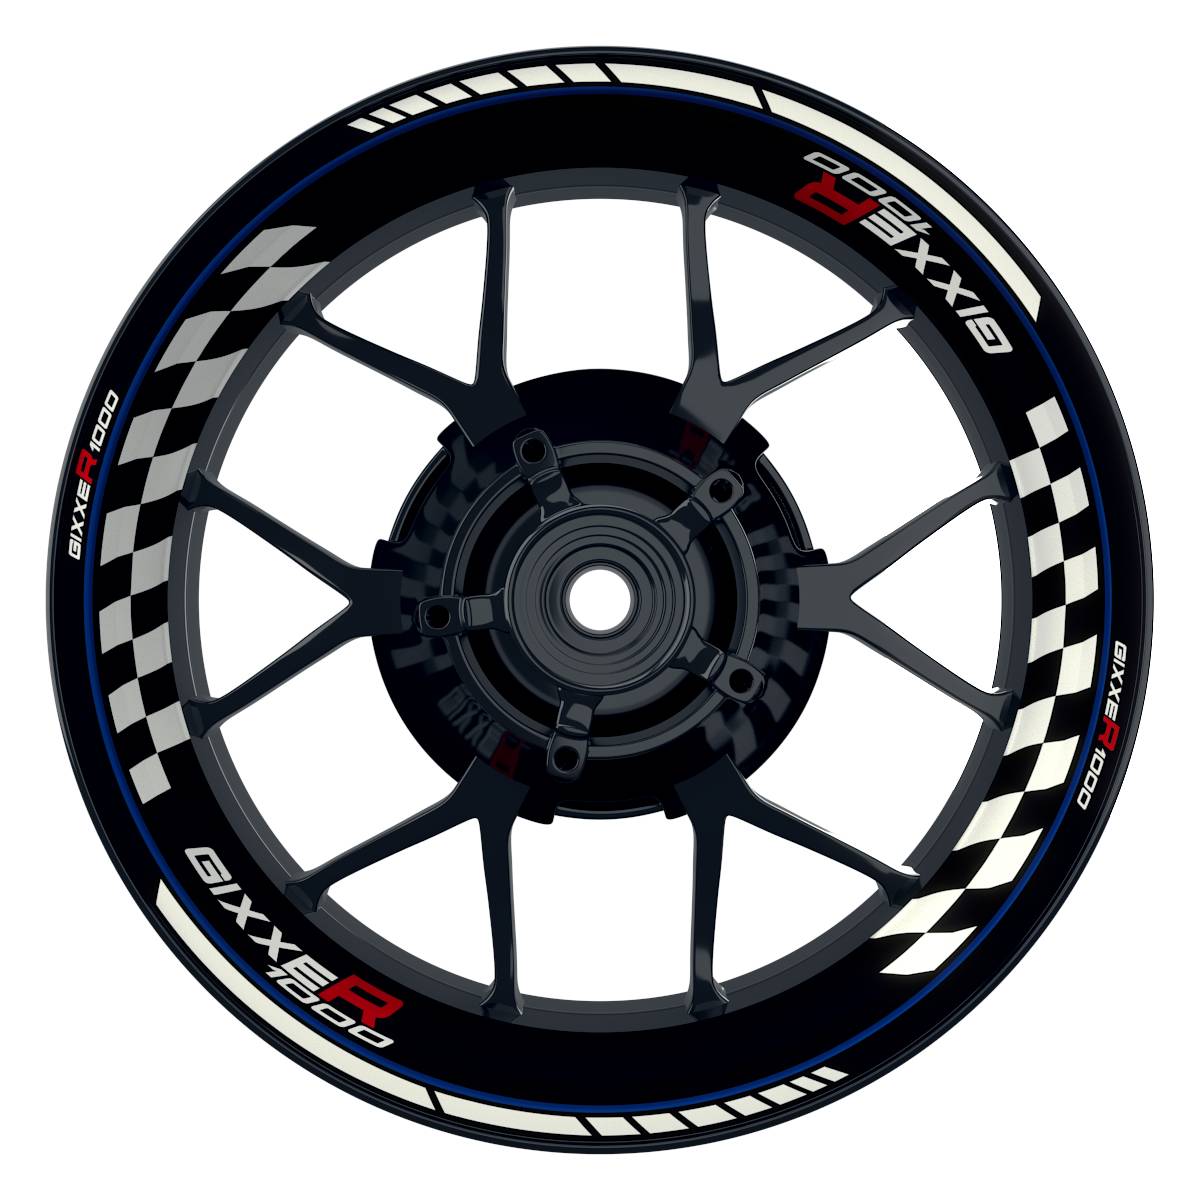 GIXXER1000 Grid schwarz blau Wheelsticker Felgenaufkleber